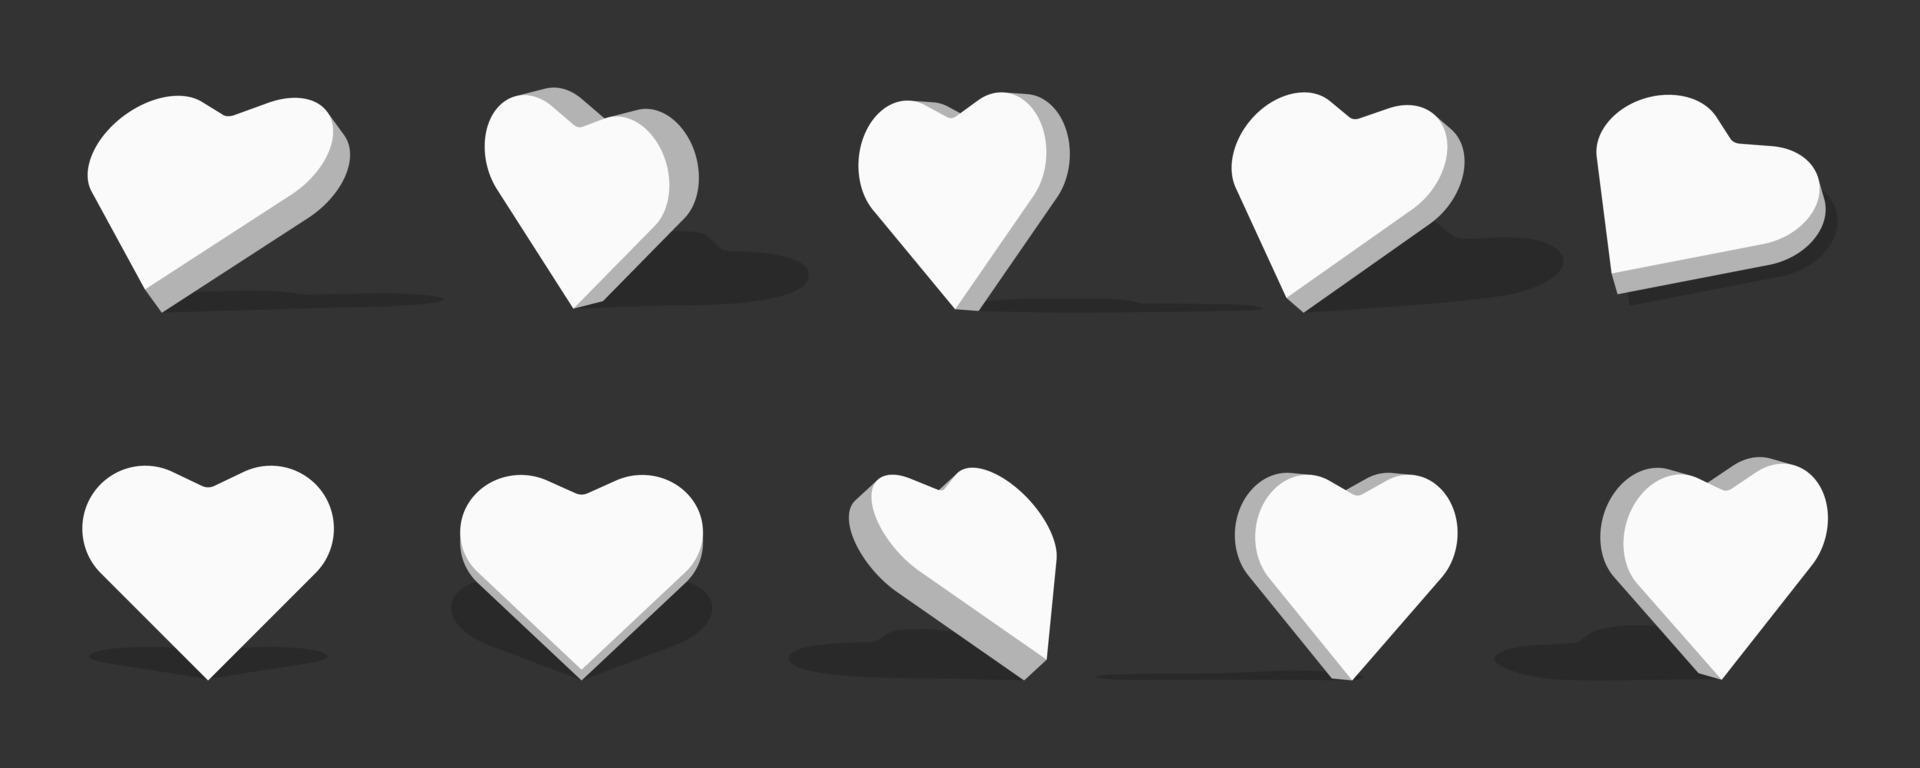 Ilustração do ícone 3d de coração branco com diferentes pontos de vista e ângulos vetor